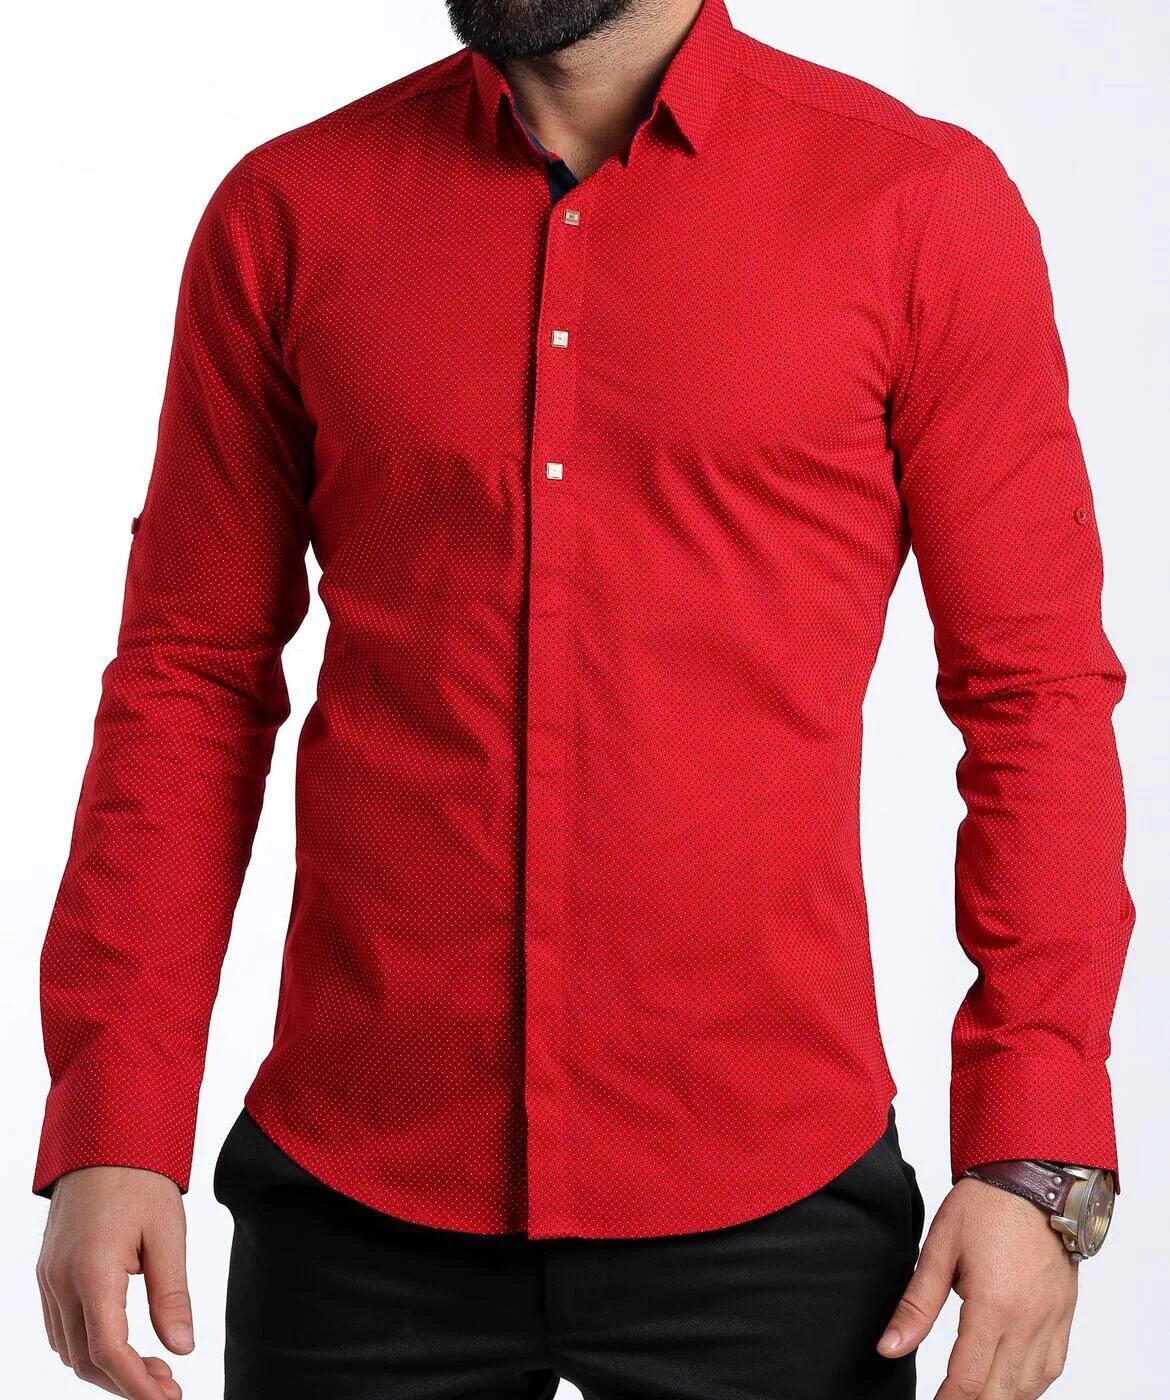 Красная рубашка текст. Рубашка мужская красная. Ярко красная рубашка мужская. Красная рубаха мужская. Рубашка мужская с длинным рукавом красная.